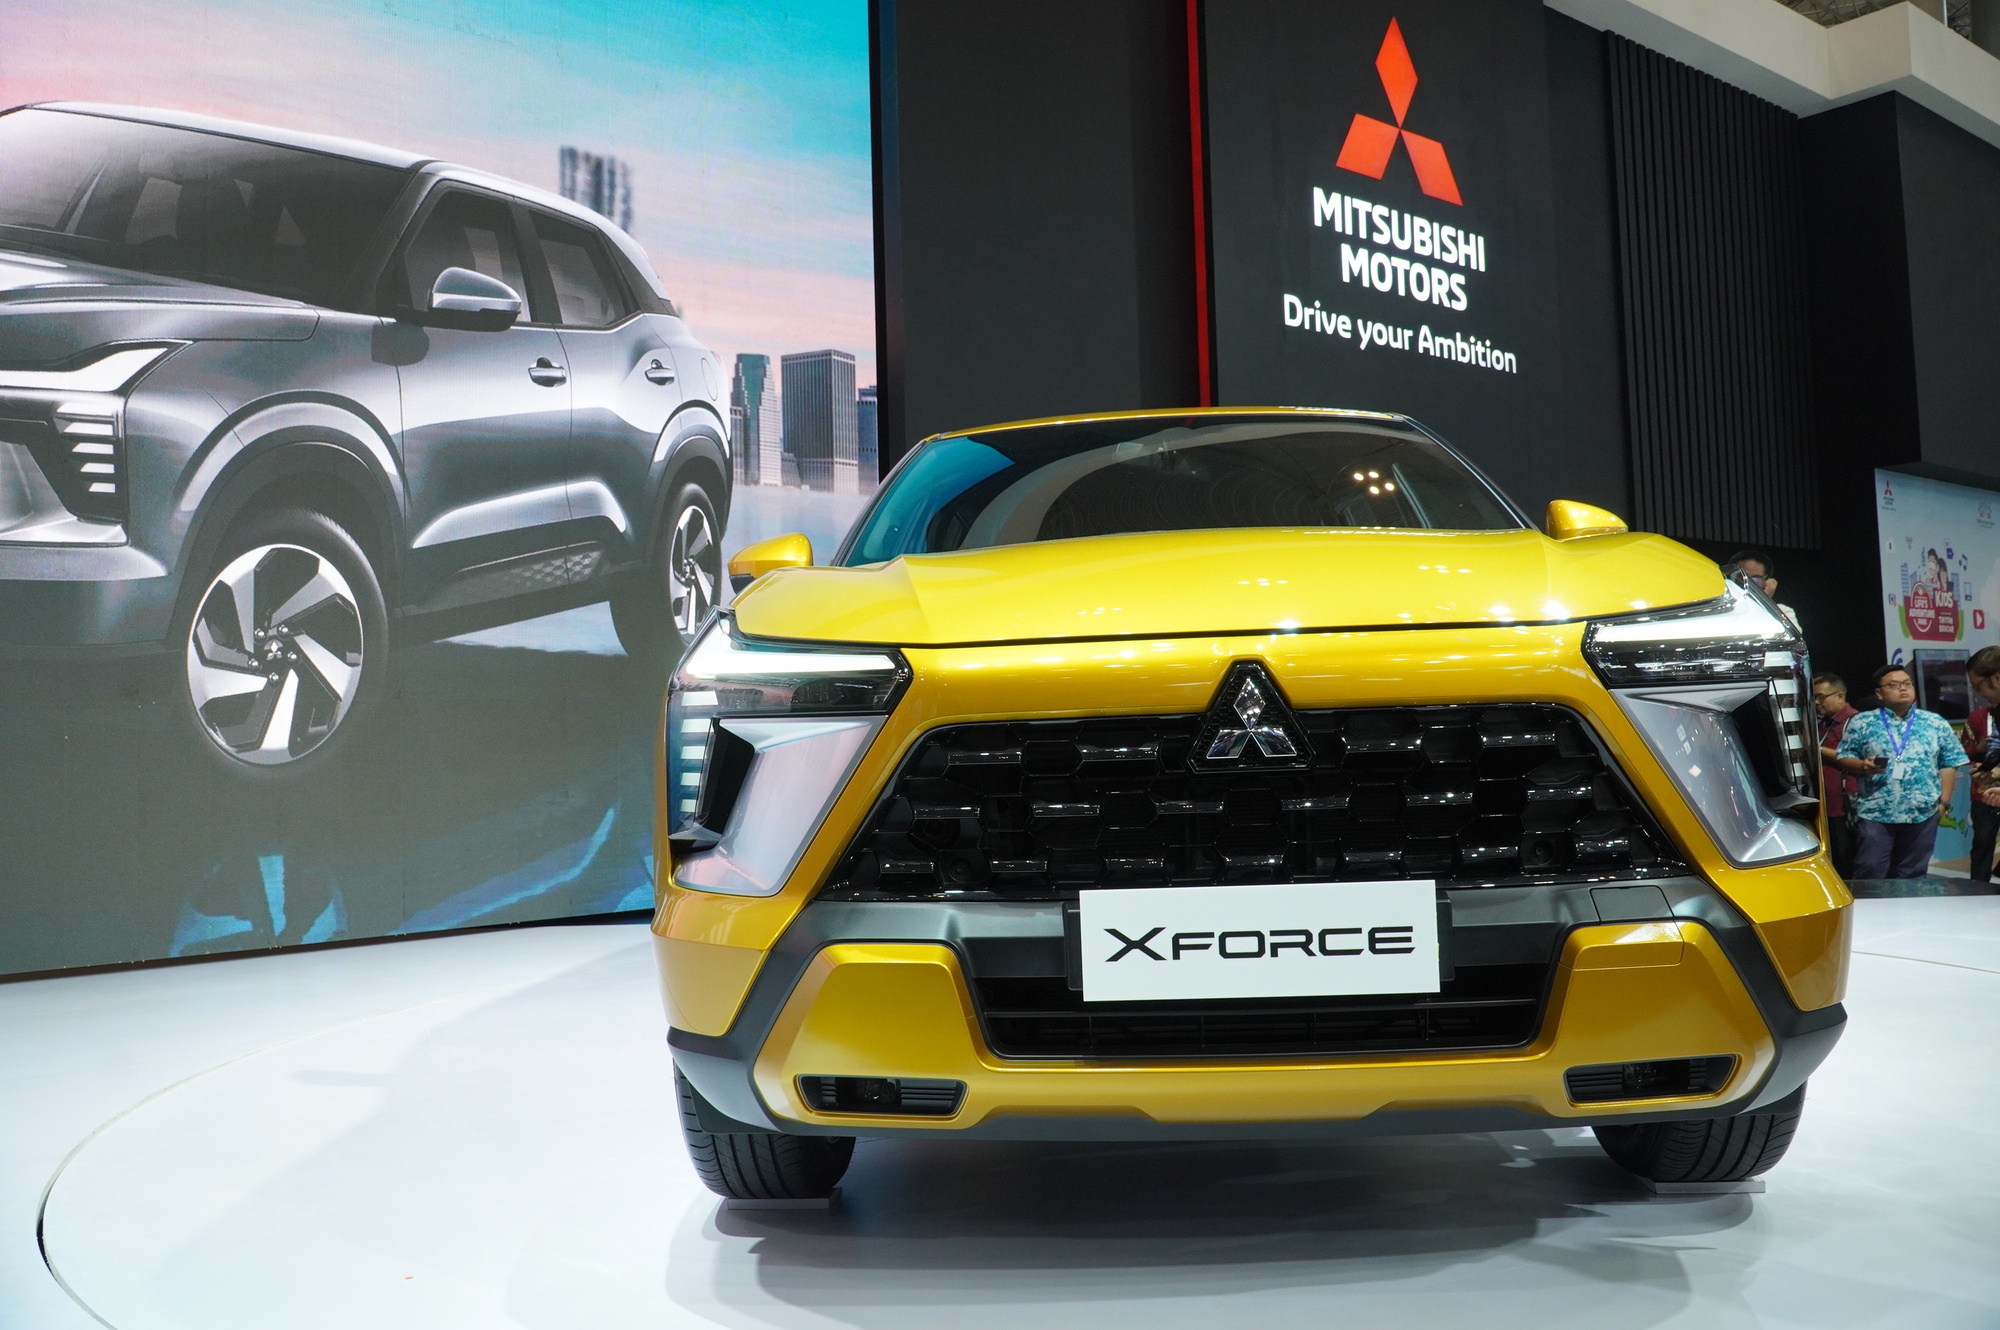 Chi tiết Mitsubishi Xforce sắp bán tại Việt Nam - Ảnh 2.